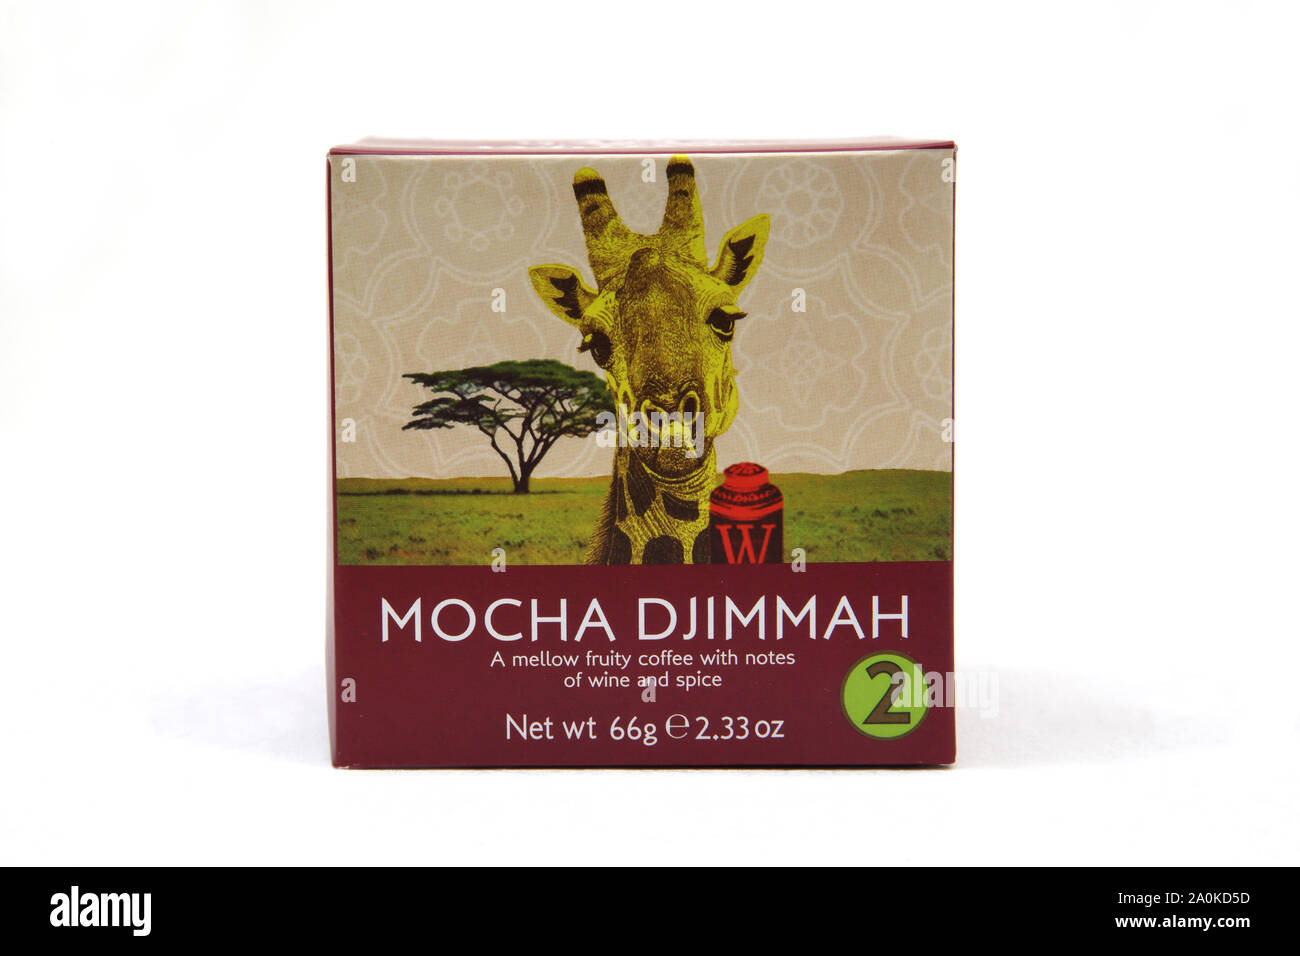 Box of Mocha Djimmah Coffee from Whittard Stock Photo